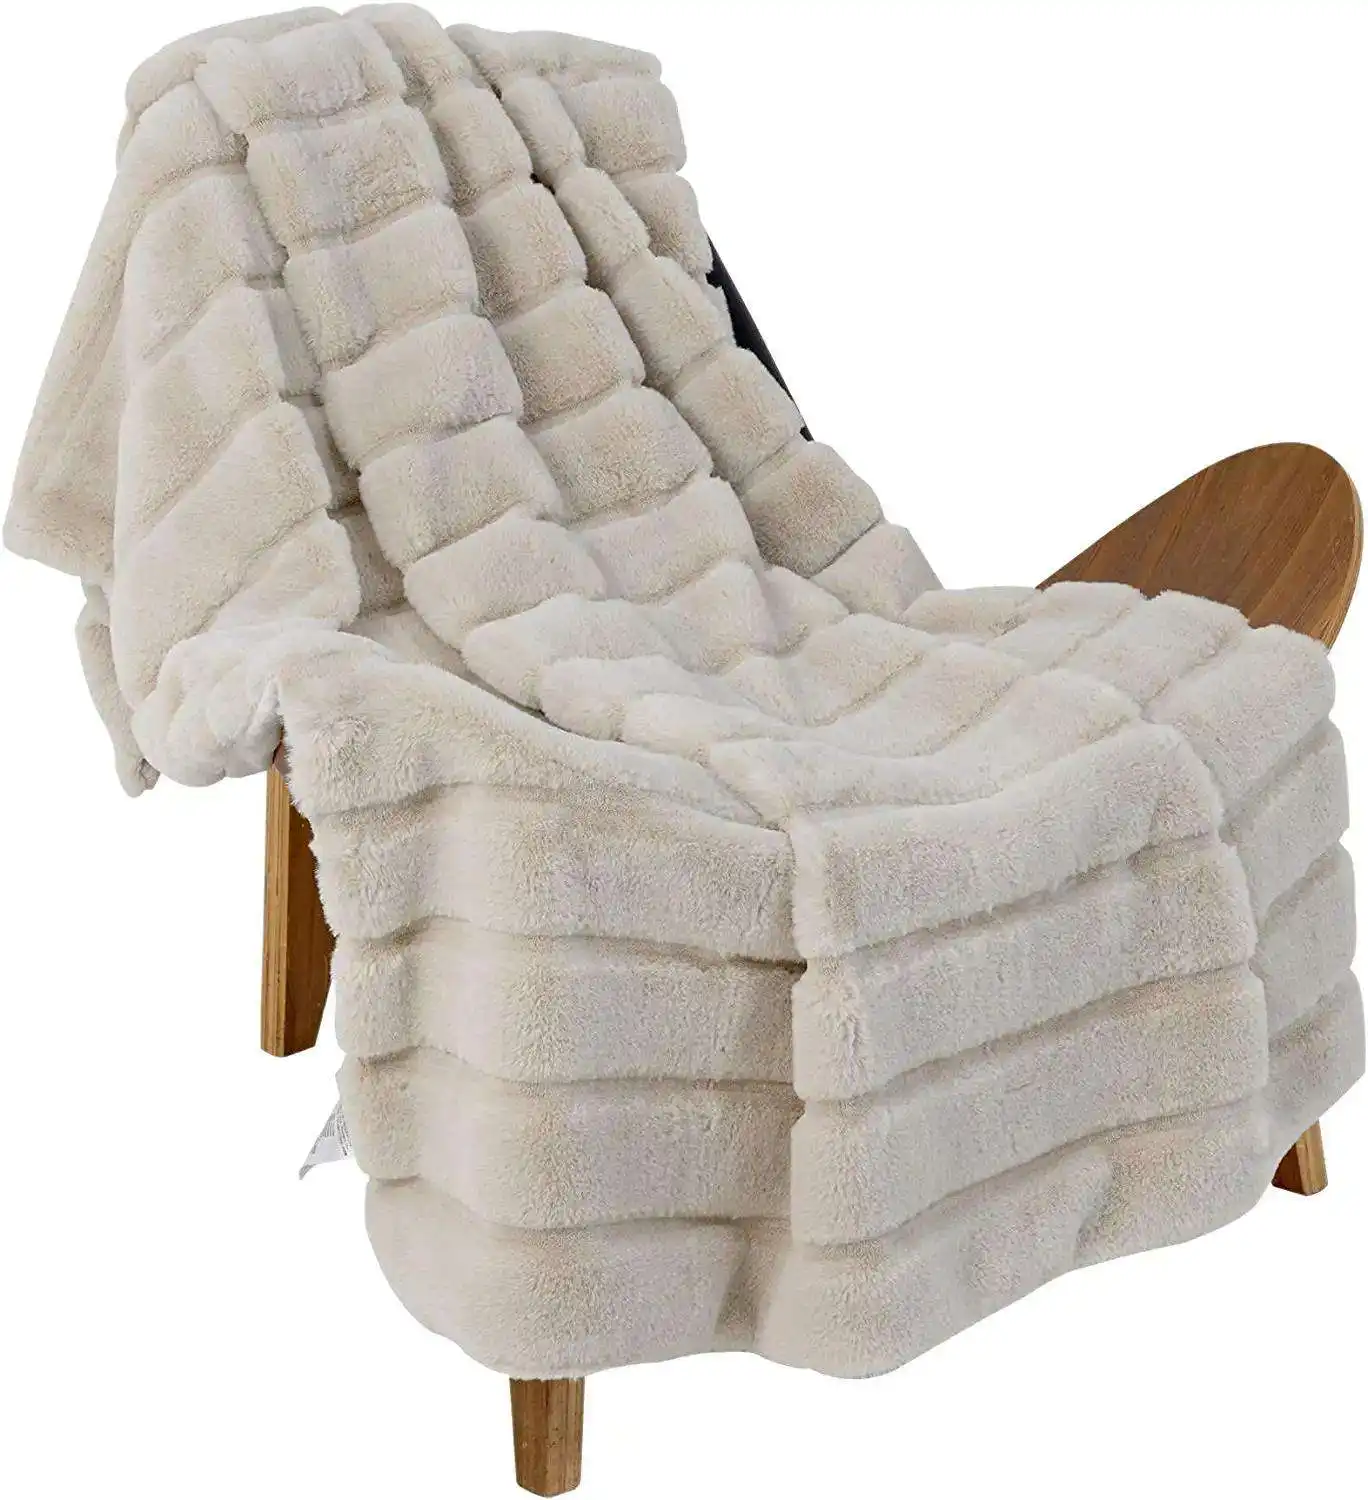 Manta personalizada Queeneo, manta de piel sintética a rayas de conejo suave y acogedora para decoración del hogar